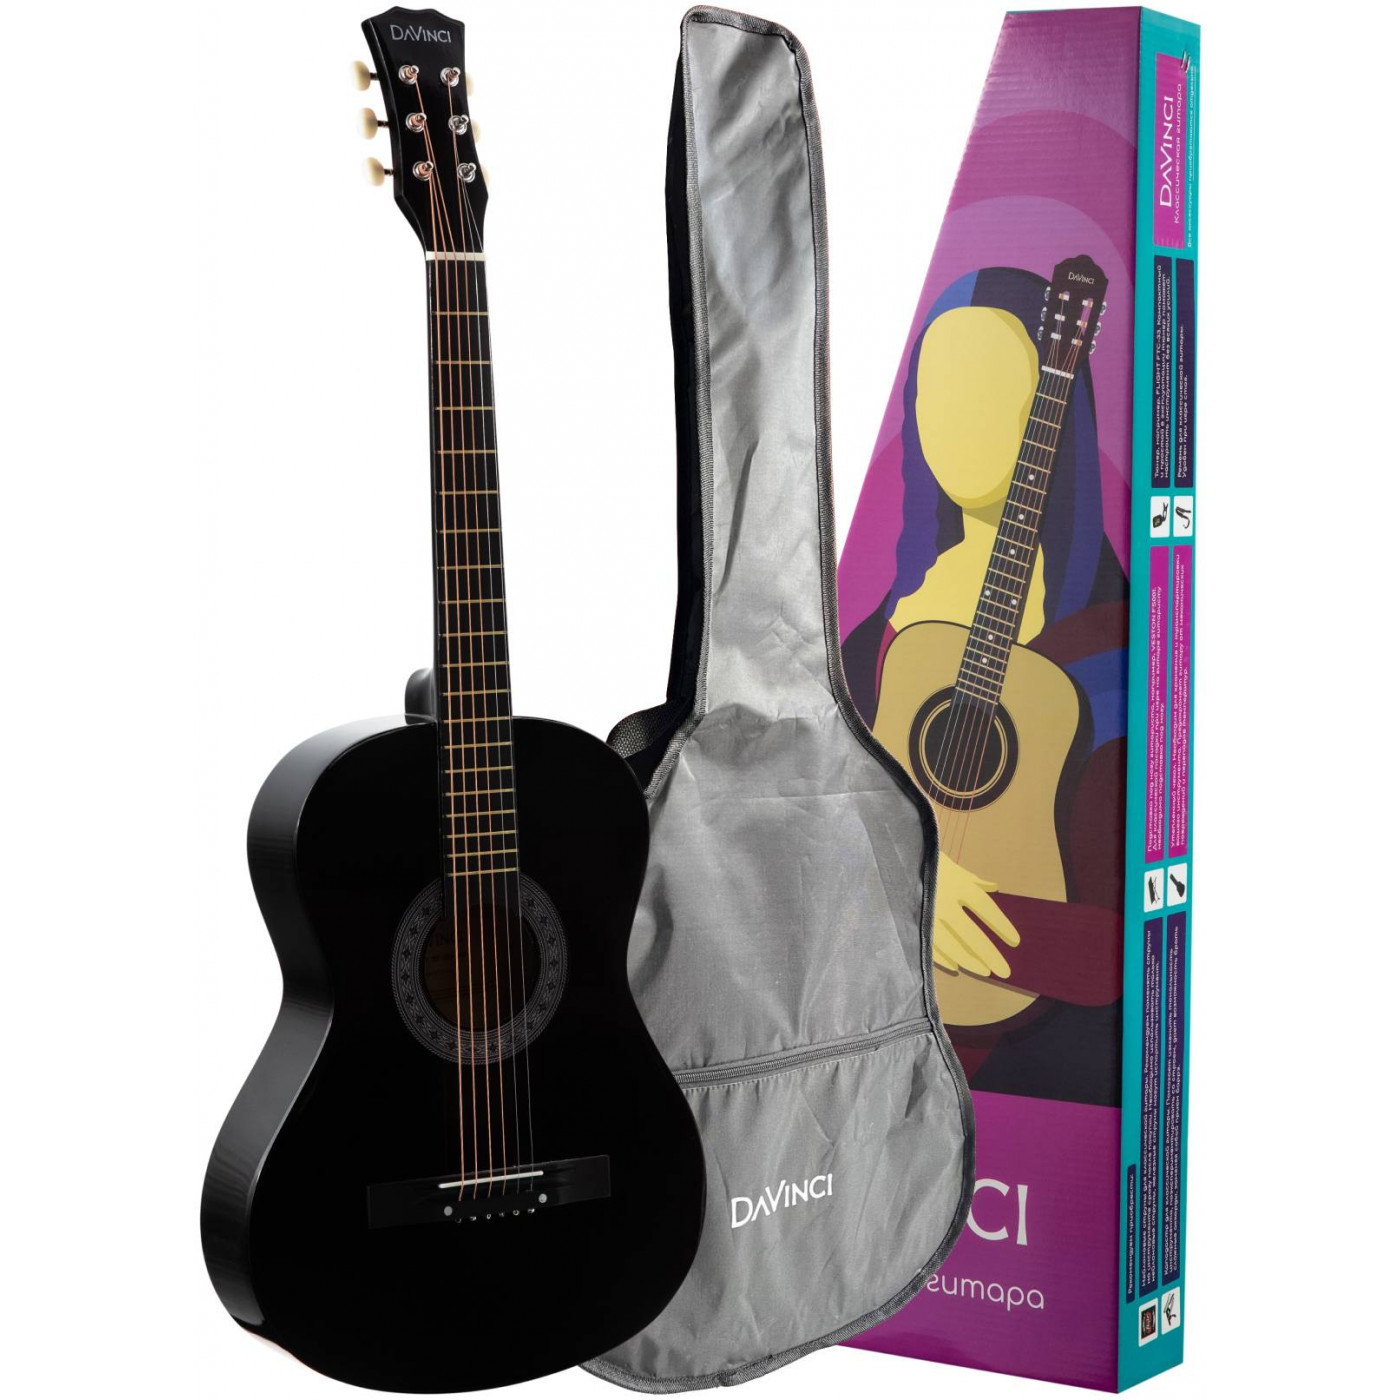 Акустические гитары DAVINCI DF-50A BK + Bag (чехол в компл.) 6 шт комплект 0 028 0 043 классическая гитара струны nylon два а нормальный напряжение